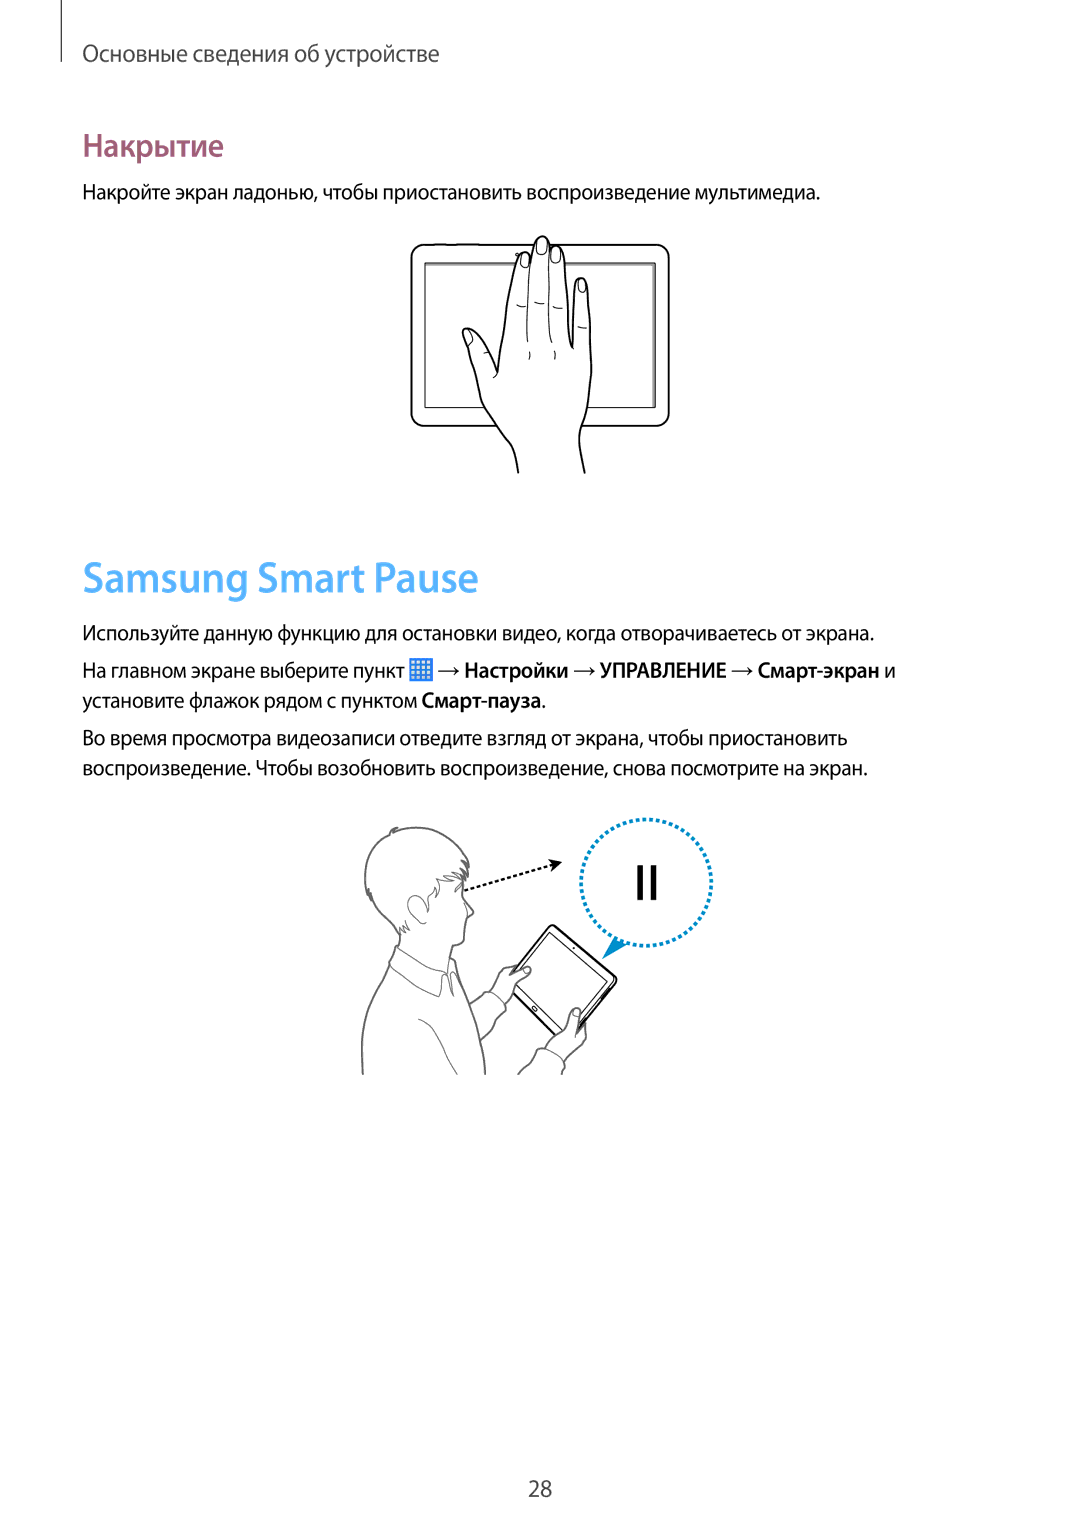 Samsung SM-P6010ZWAMGF, SM-P6010ZKESER, SM-P6010ZKAMGF, SM-P6010ZKASER, SM-P6010ZKEMGF manual Samsung Smart Pause, Накрытие 